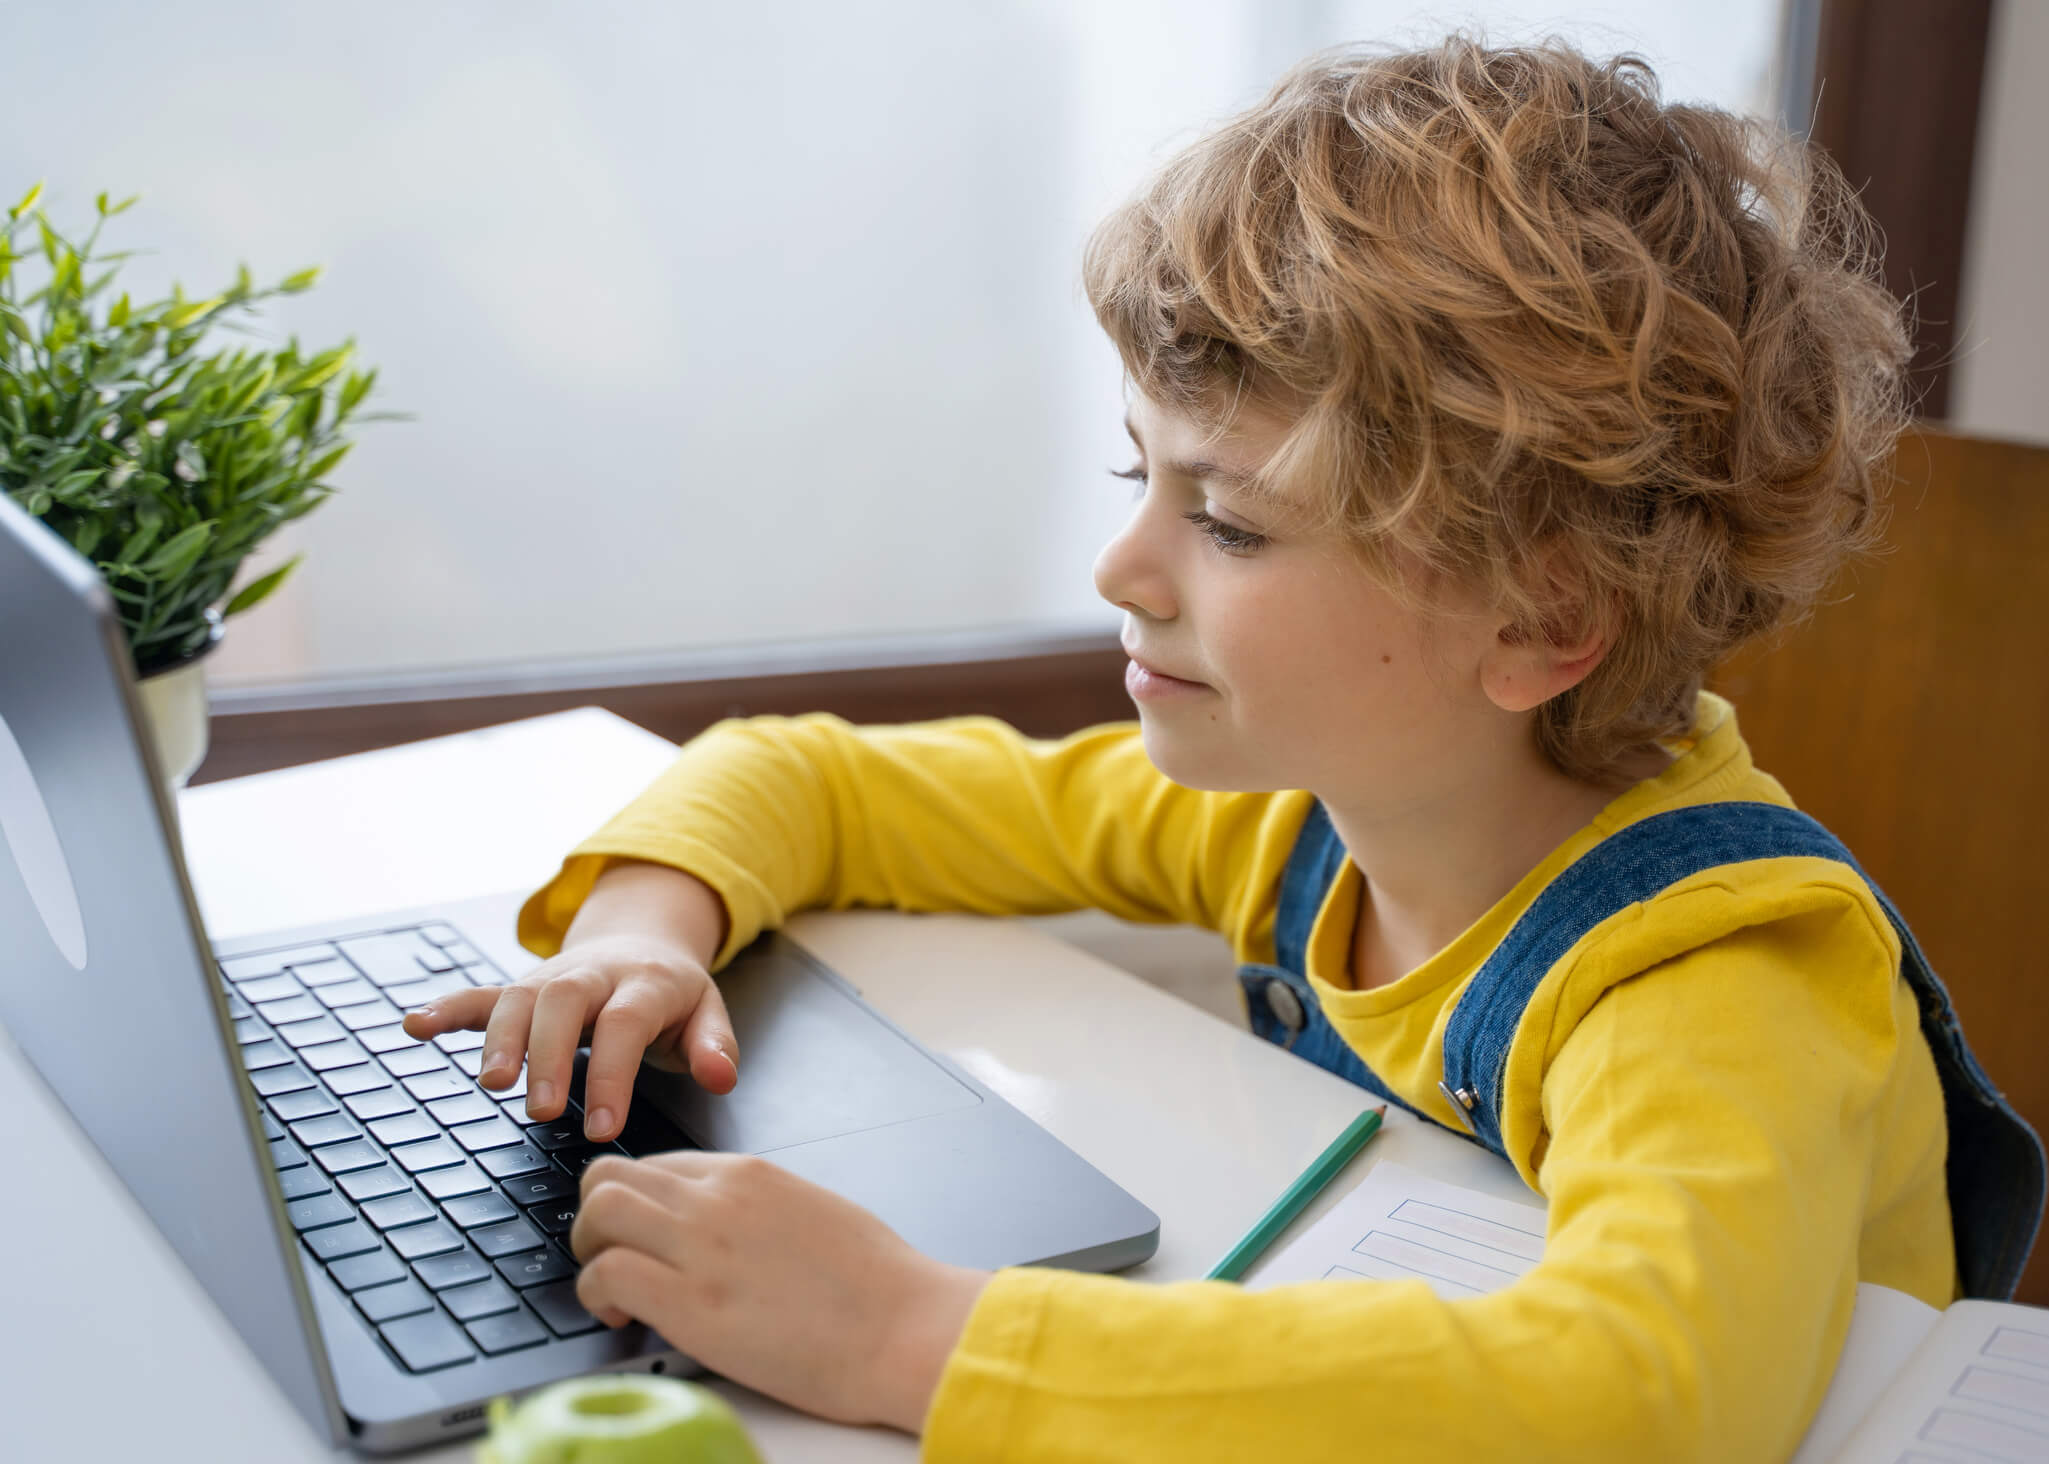 6 year old boy coding